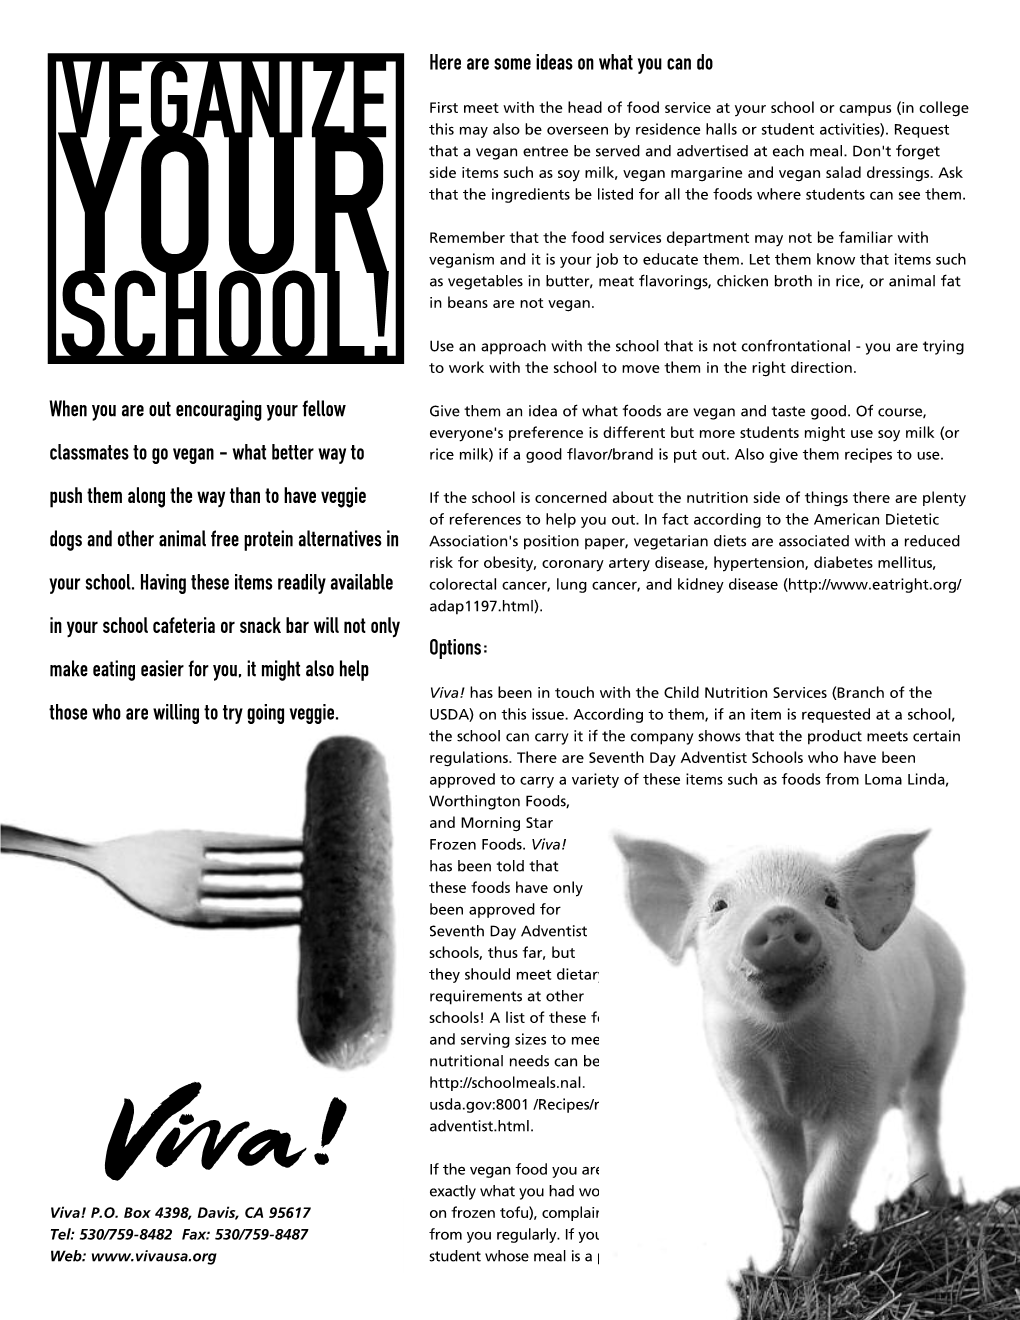 Veganize Your School